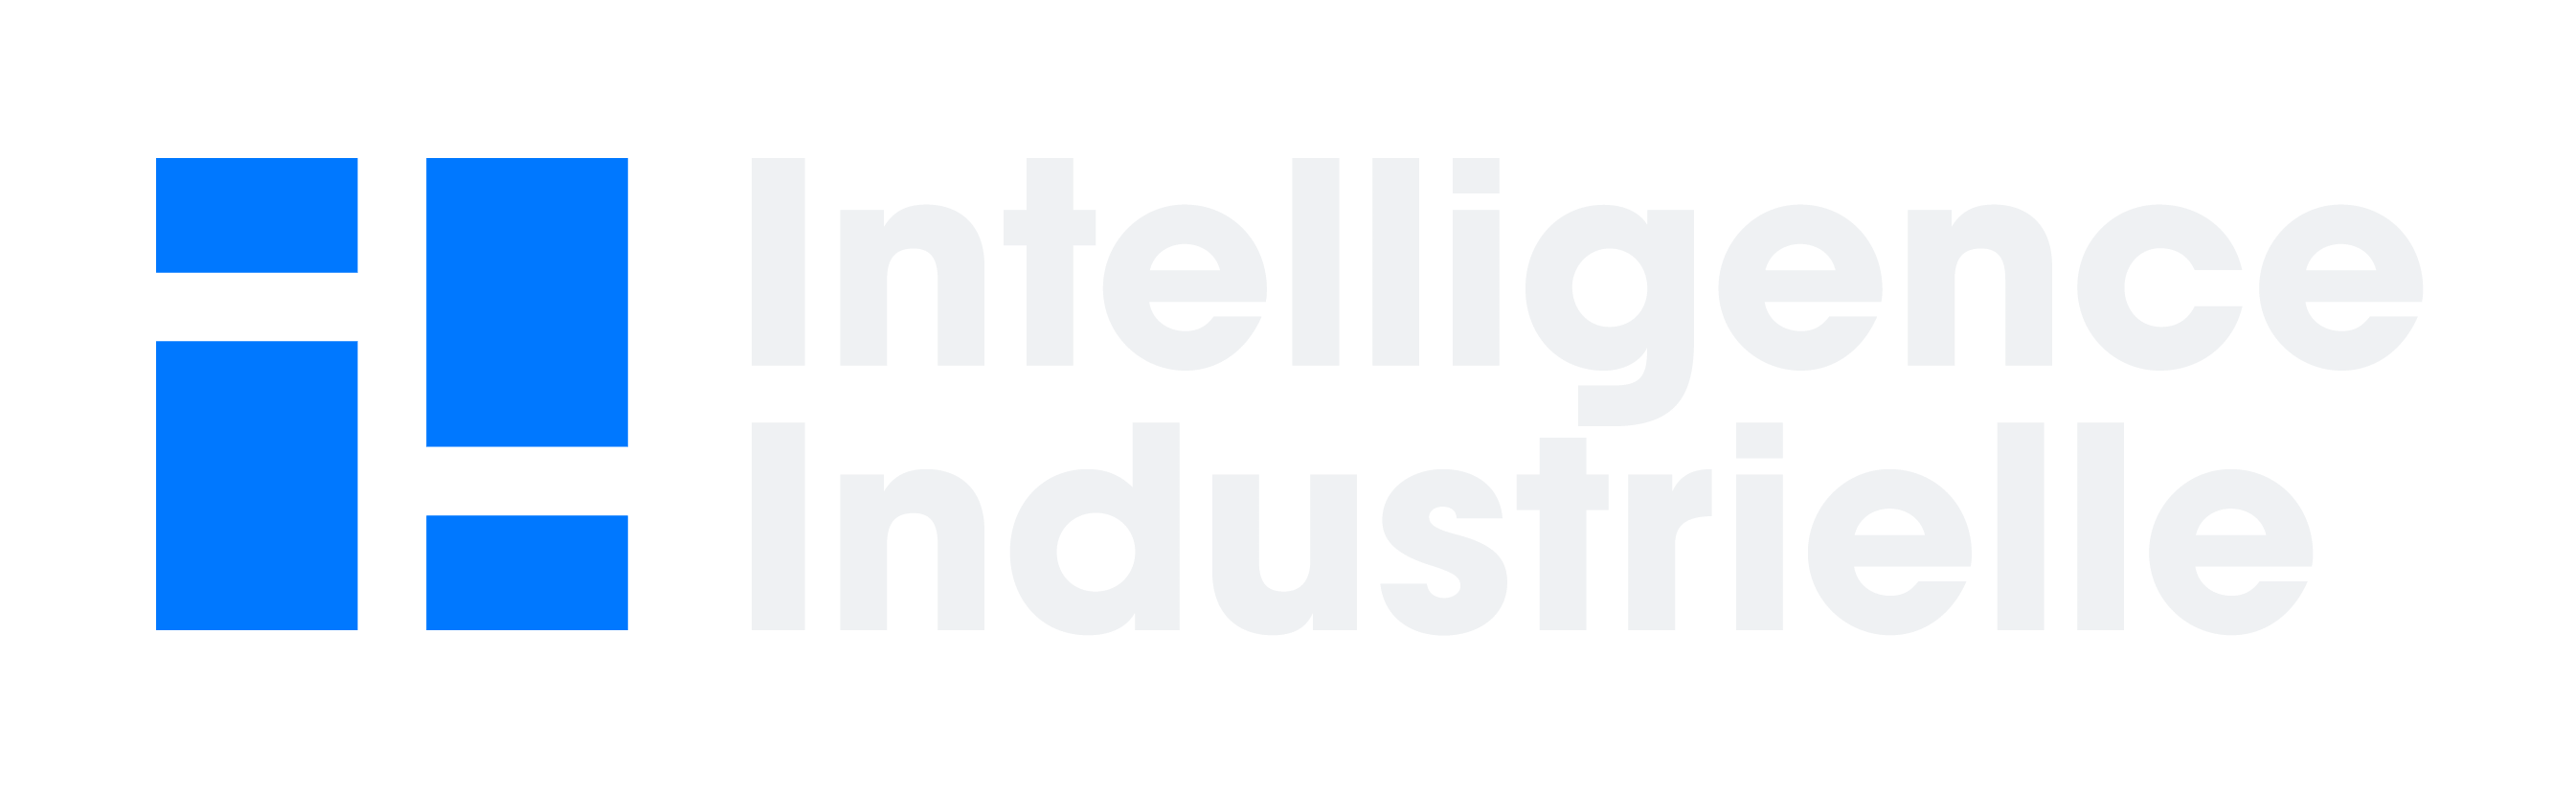 Intelligence industrielle